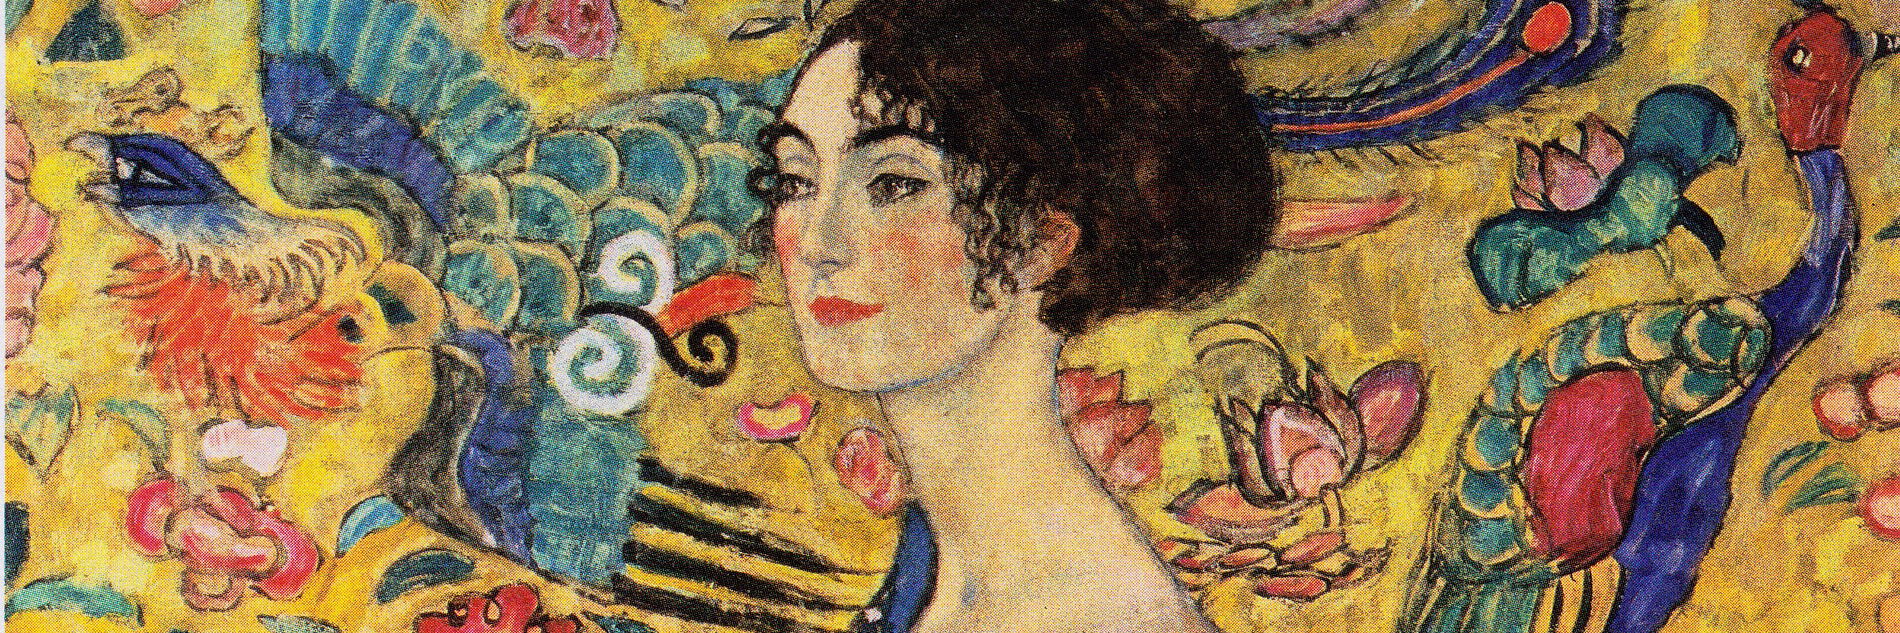 Gustav Klimt - Dame mit Fächer, Öl auf Leinwand, 1917-18